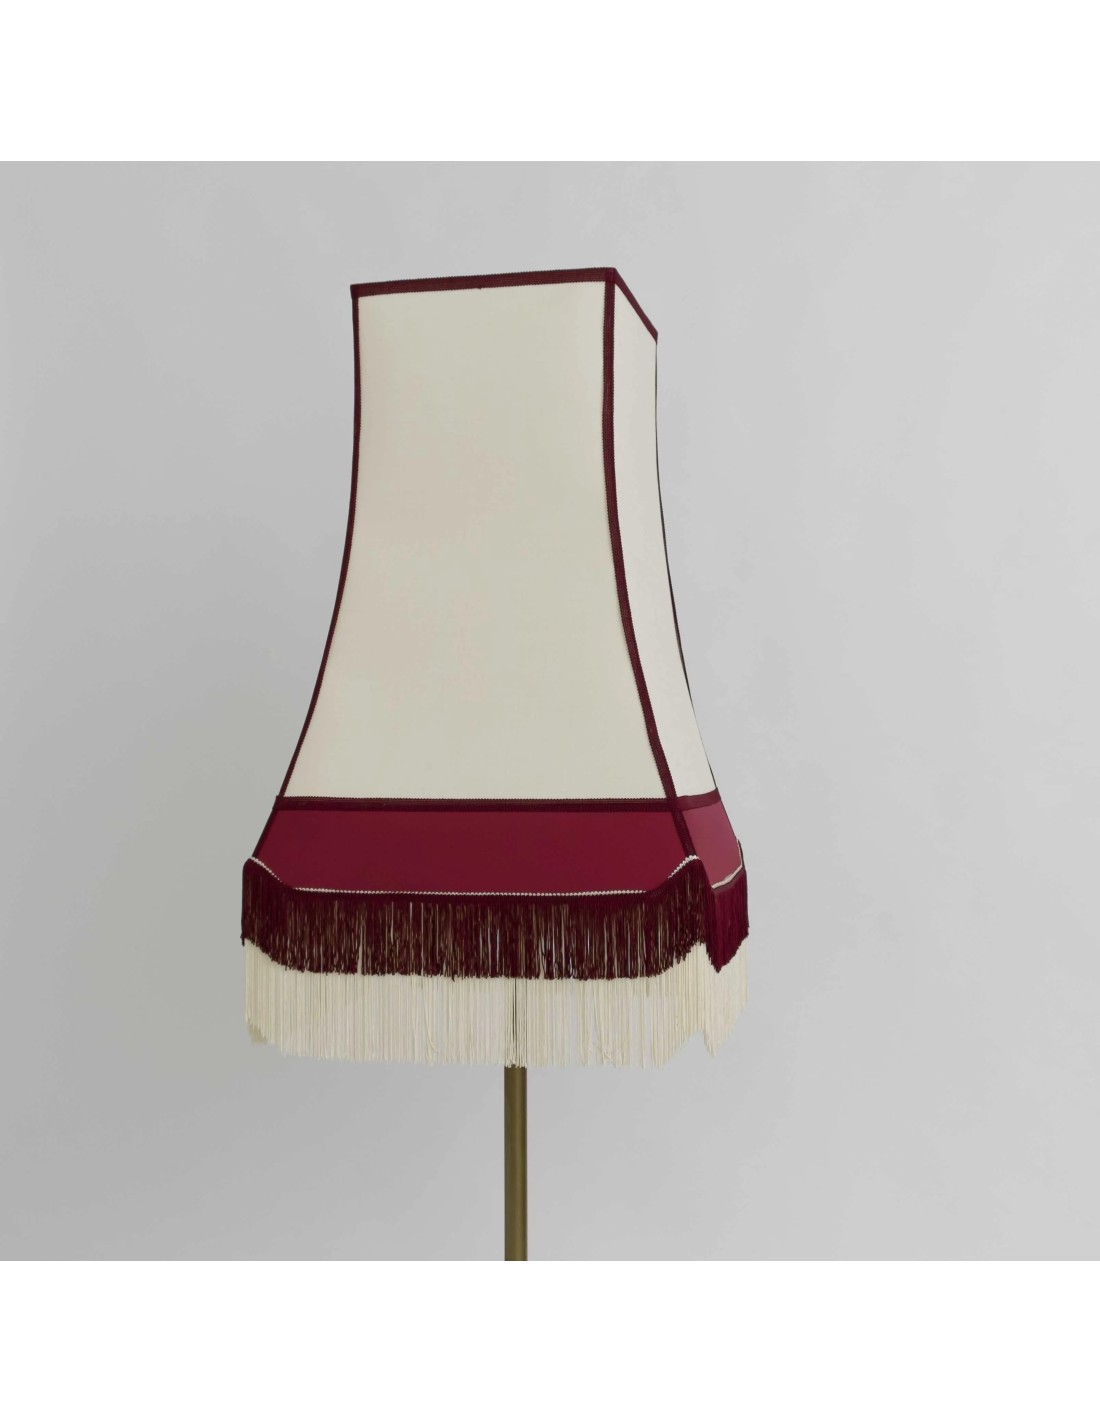 lámpara con tela de rafia granate  de un sofisticado estilo vintage